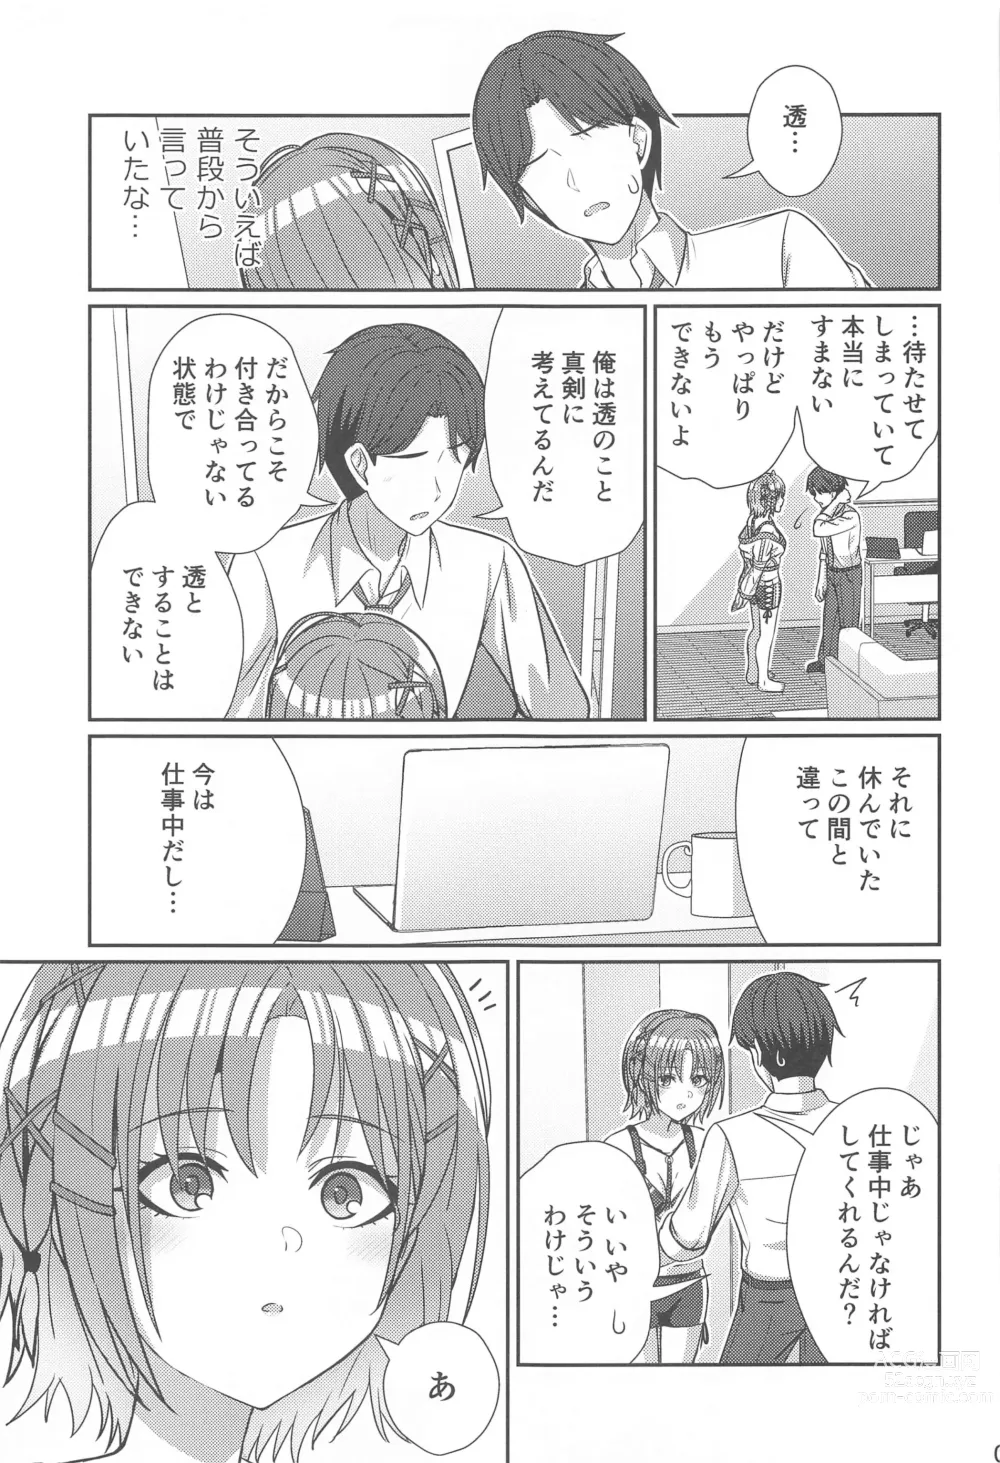 Page 6 of doujinshi Sukitooru Omoi